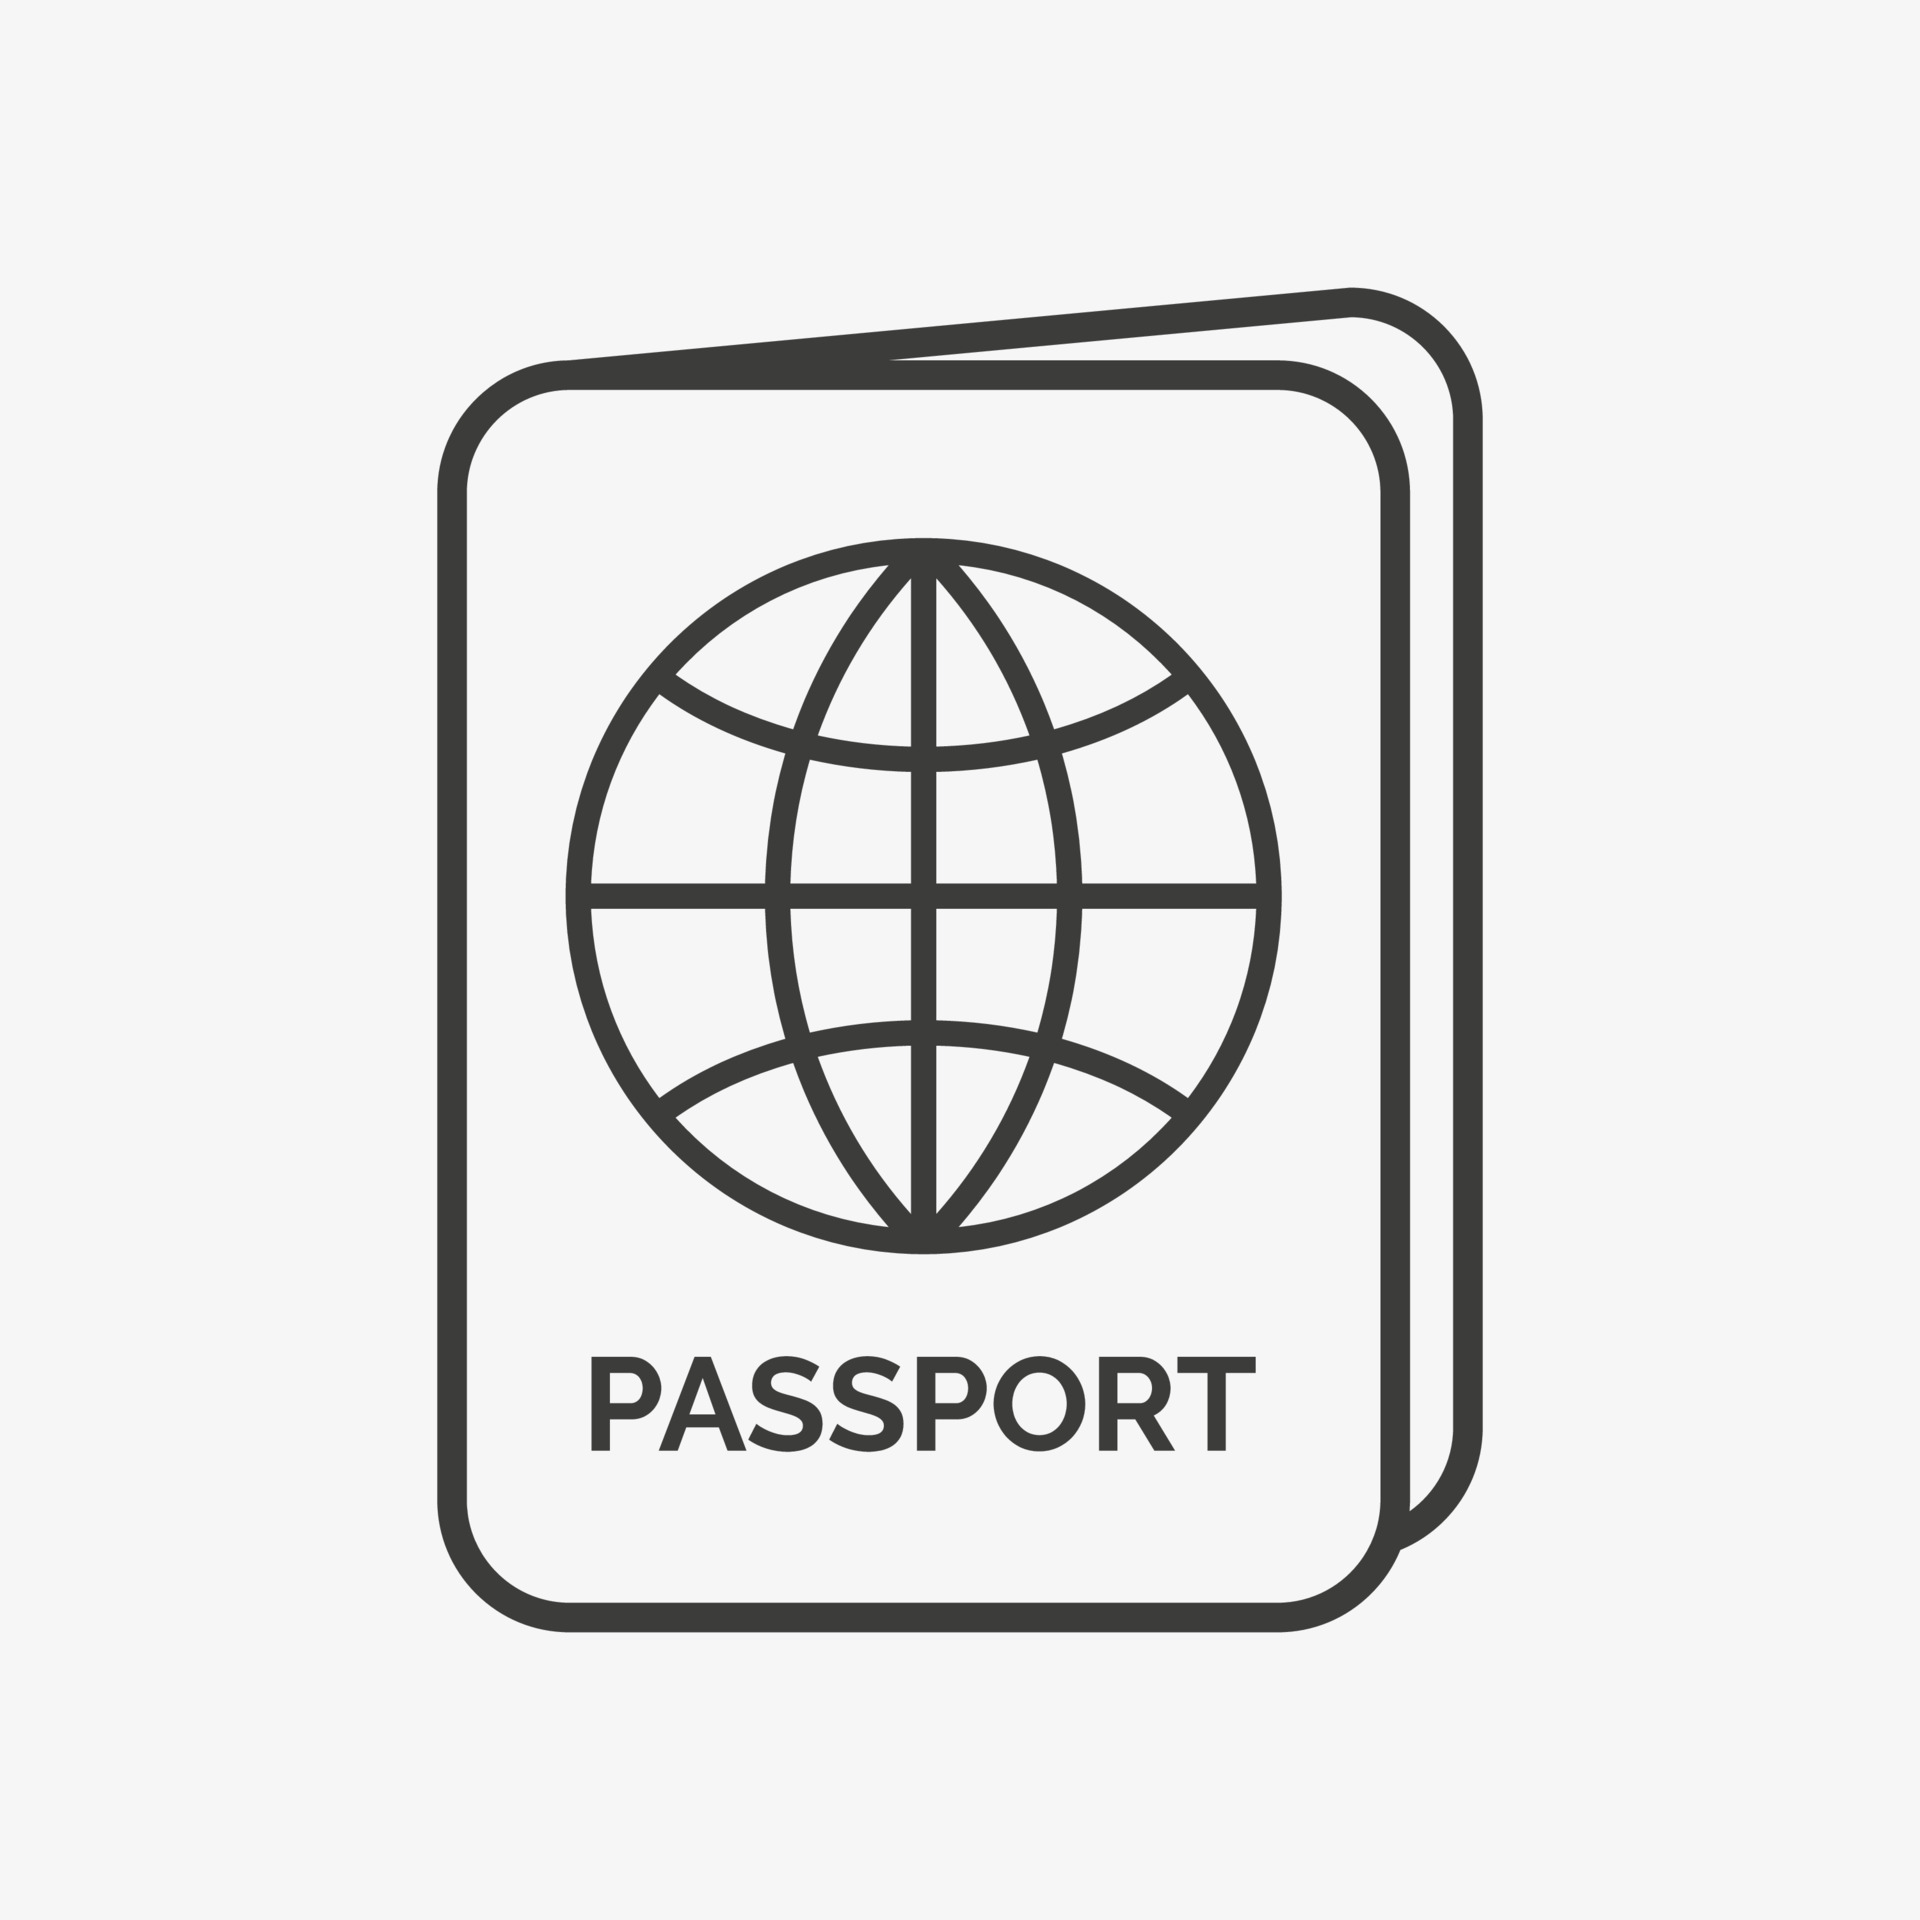 Bạn cần biểu tượng vector passport để sử dụng trong thiết kế của mình? Đừng lo lắng, hãy xem hình ảnh để tìm thấy biểu tượng phù hợp với nhu cầu của bạn.